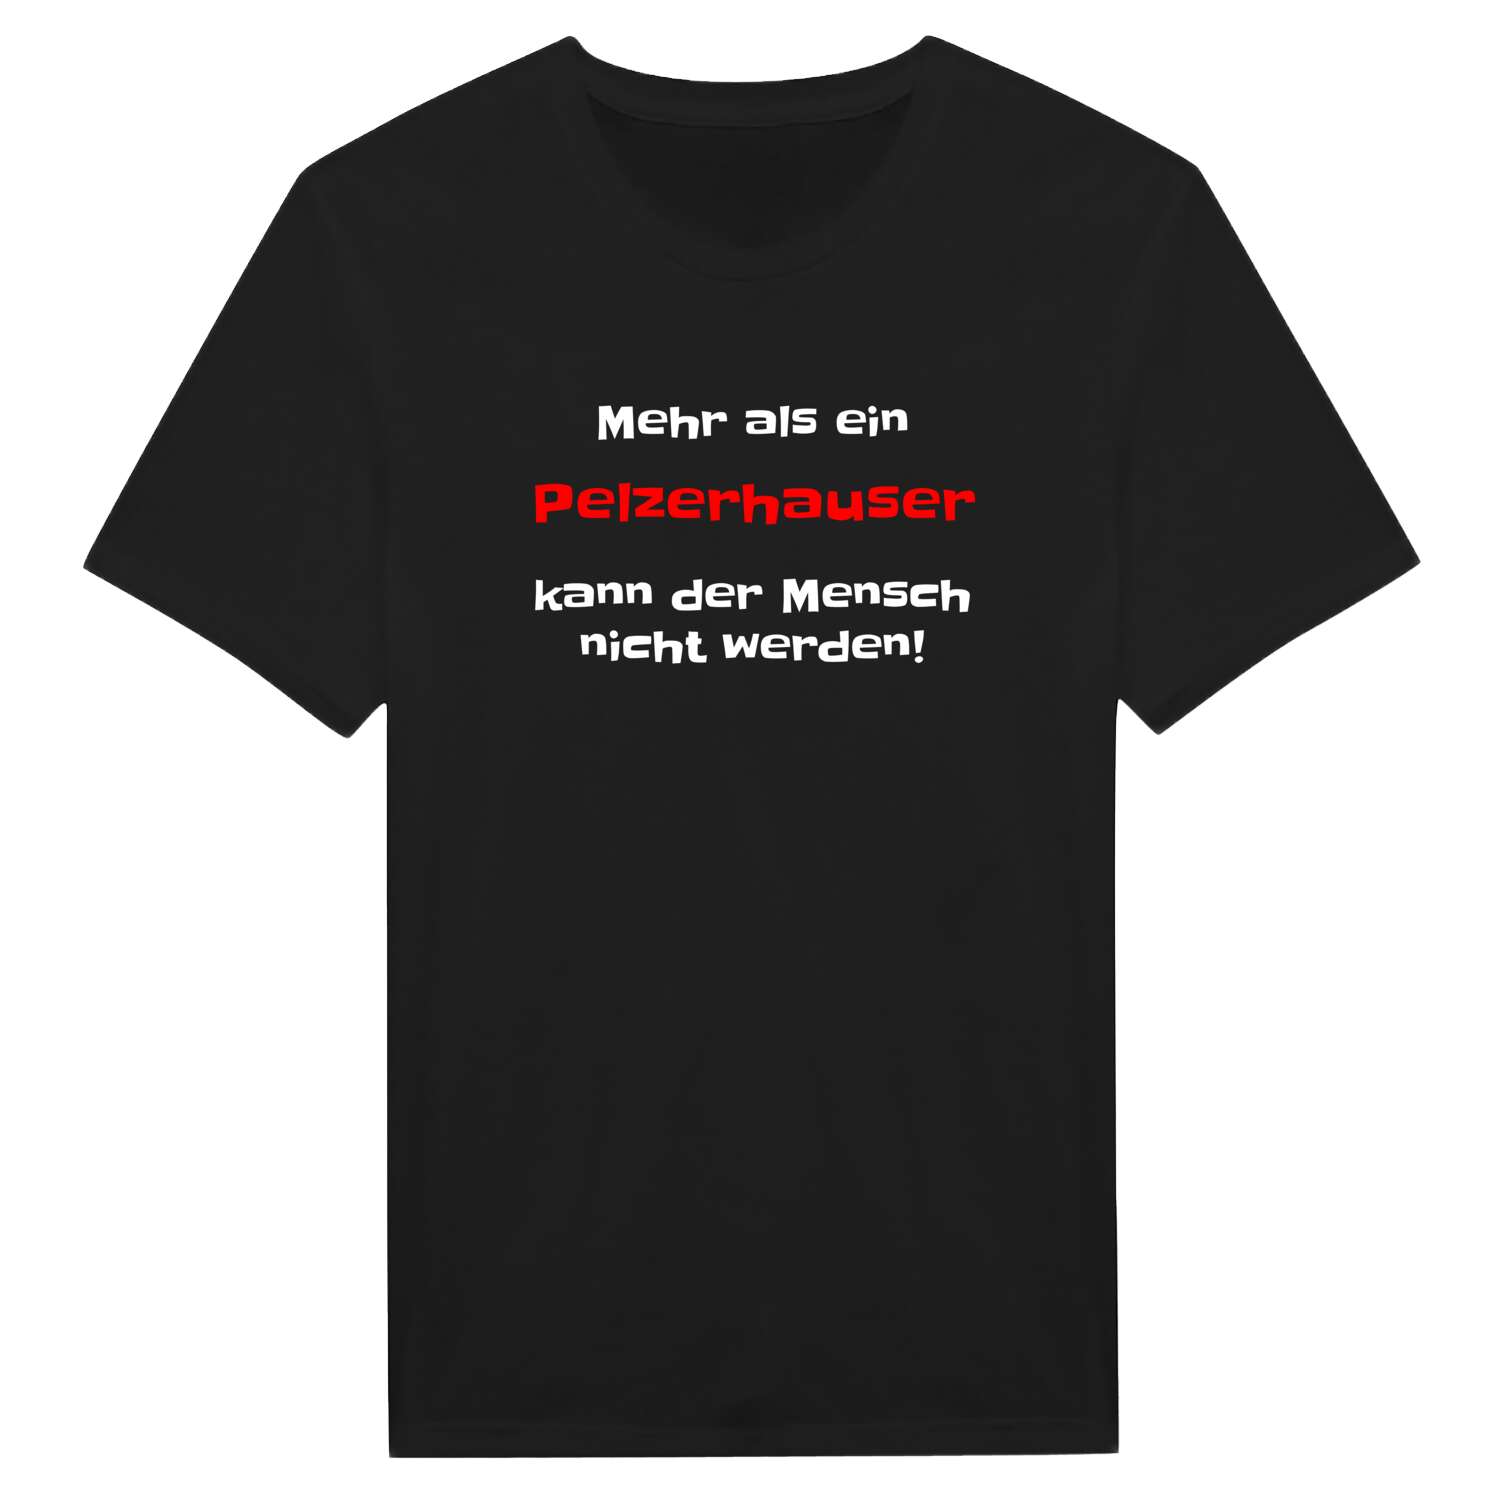 Pelzerhaus T-Shirt »Mehr als ein«